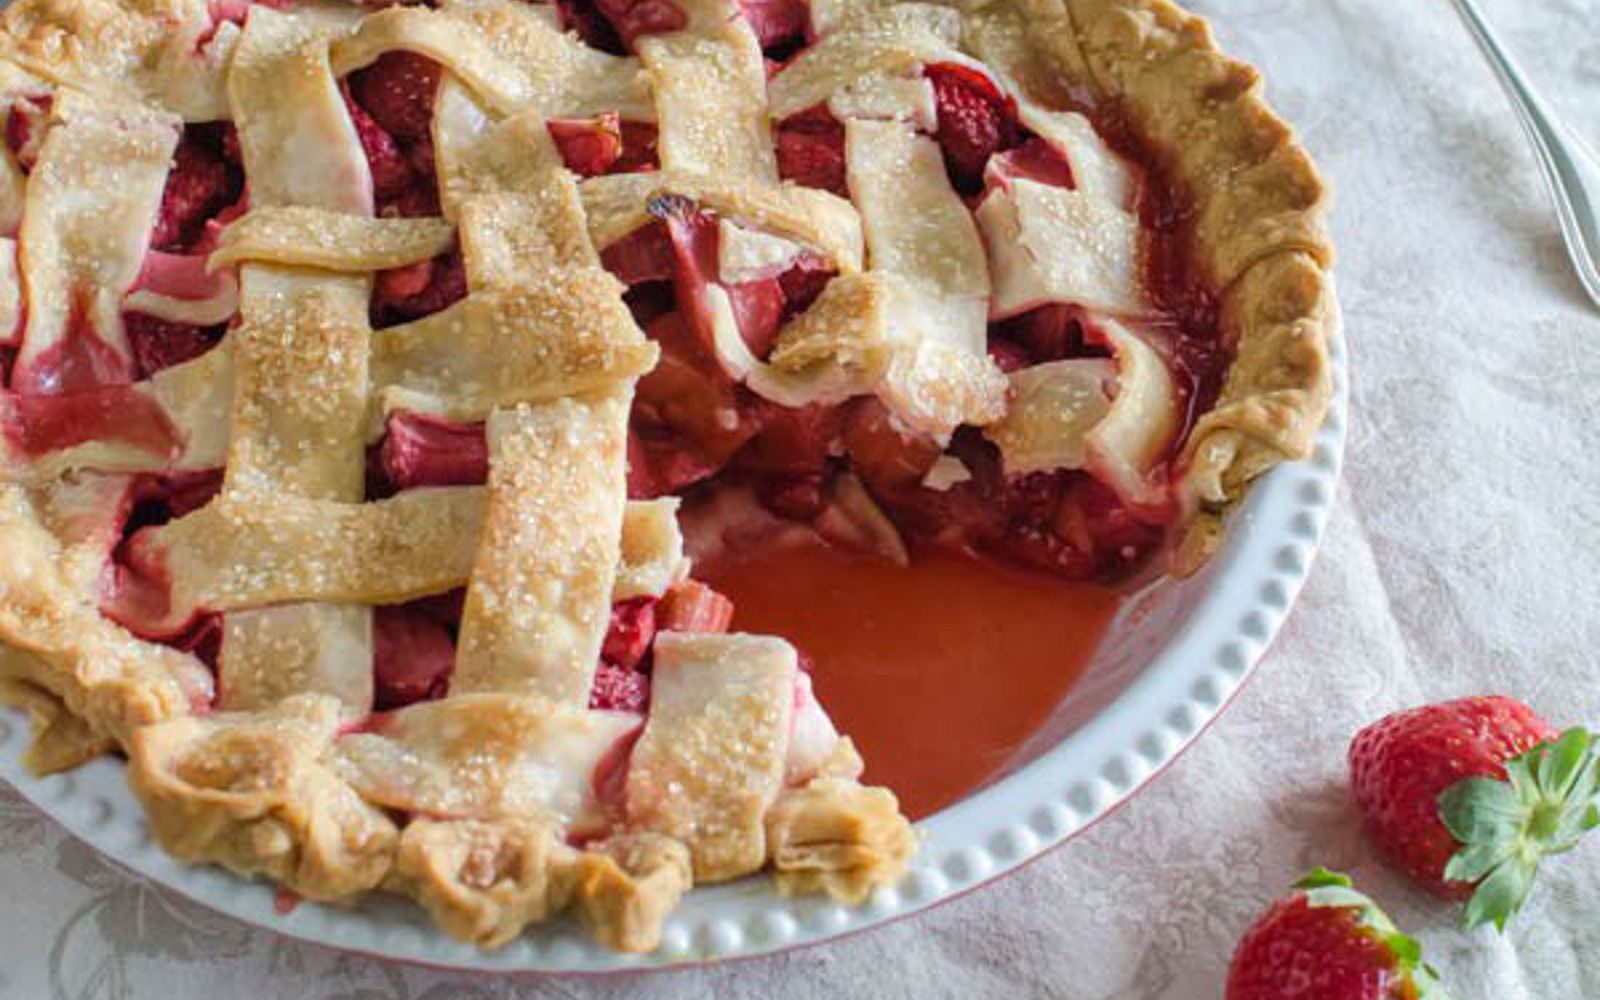 classic strawberry rhubarb pie